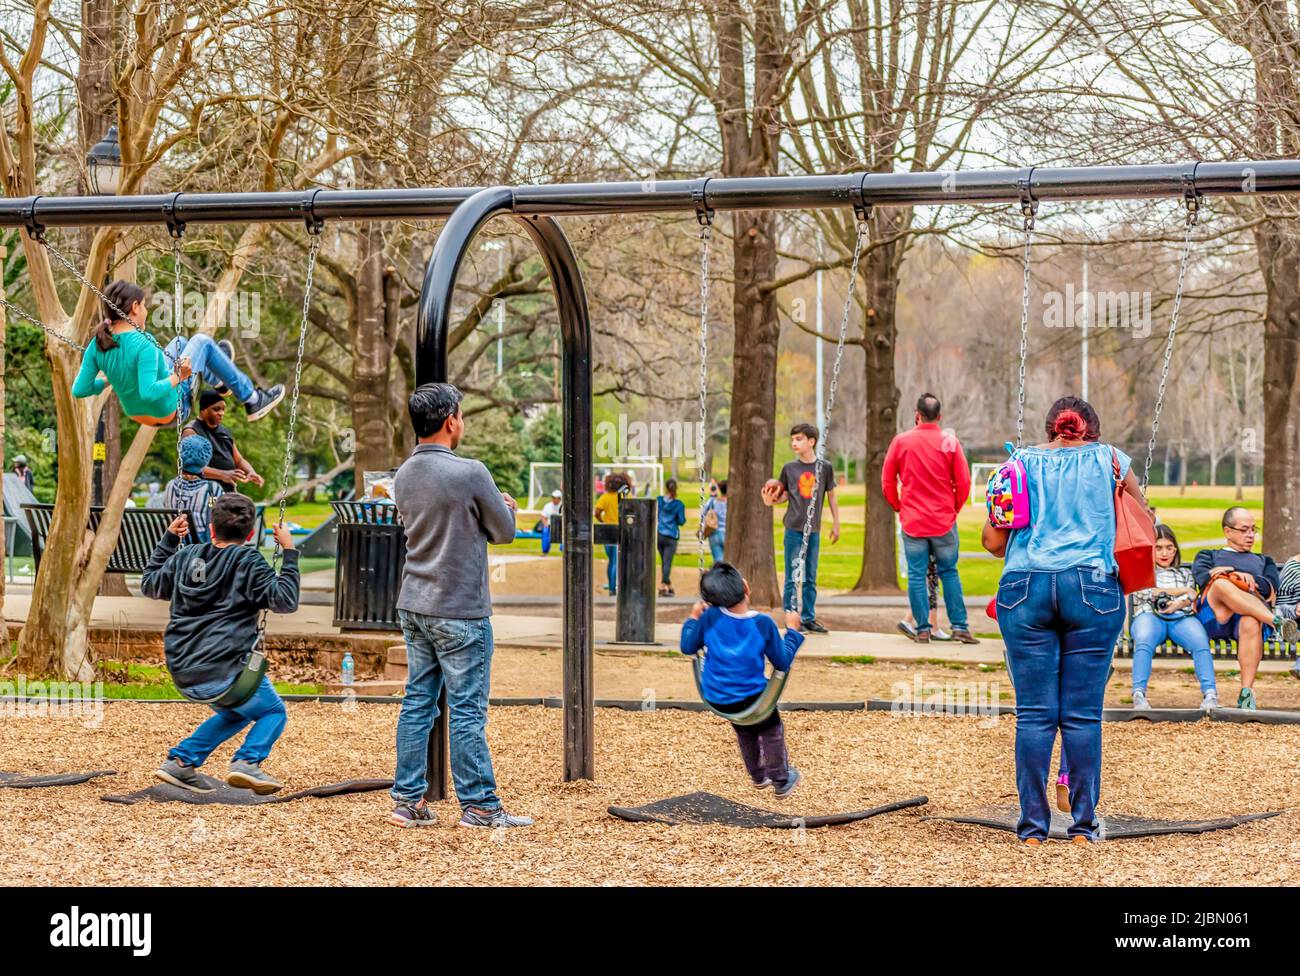 Charlotte, NC/USA - 24 marzo 2019: Famiglie che si divertono insieme nel Freedom Park. I bambini che oscillano sulle altalene mentre i loro genitori guardano in modo protetto. Foto Stock